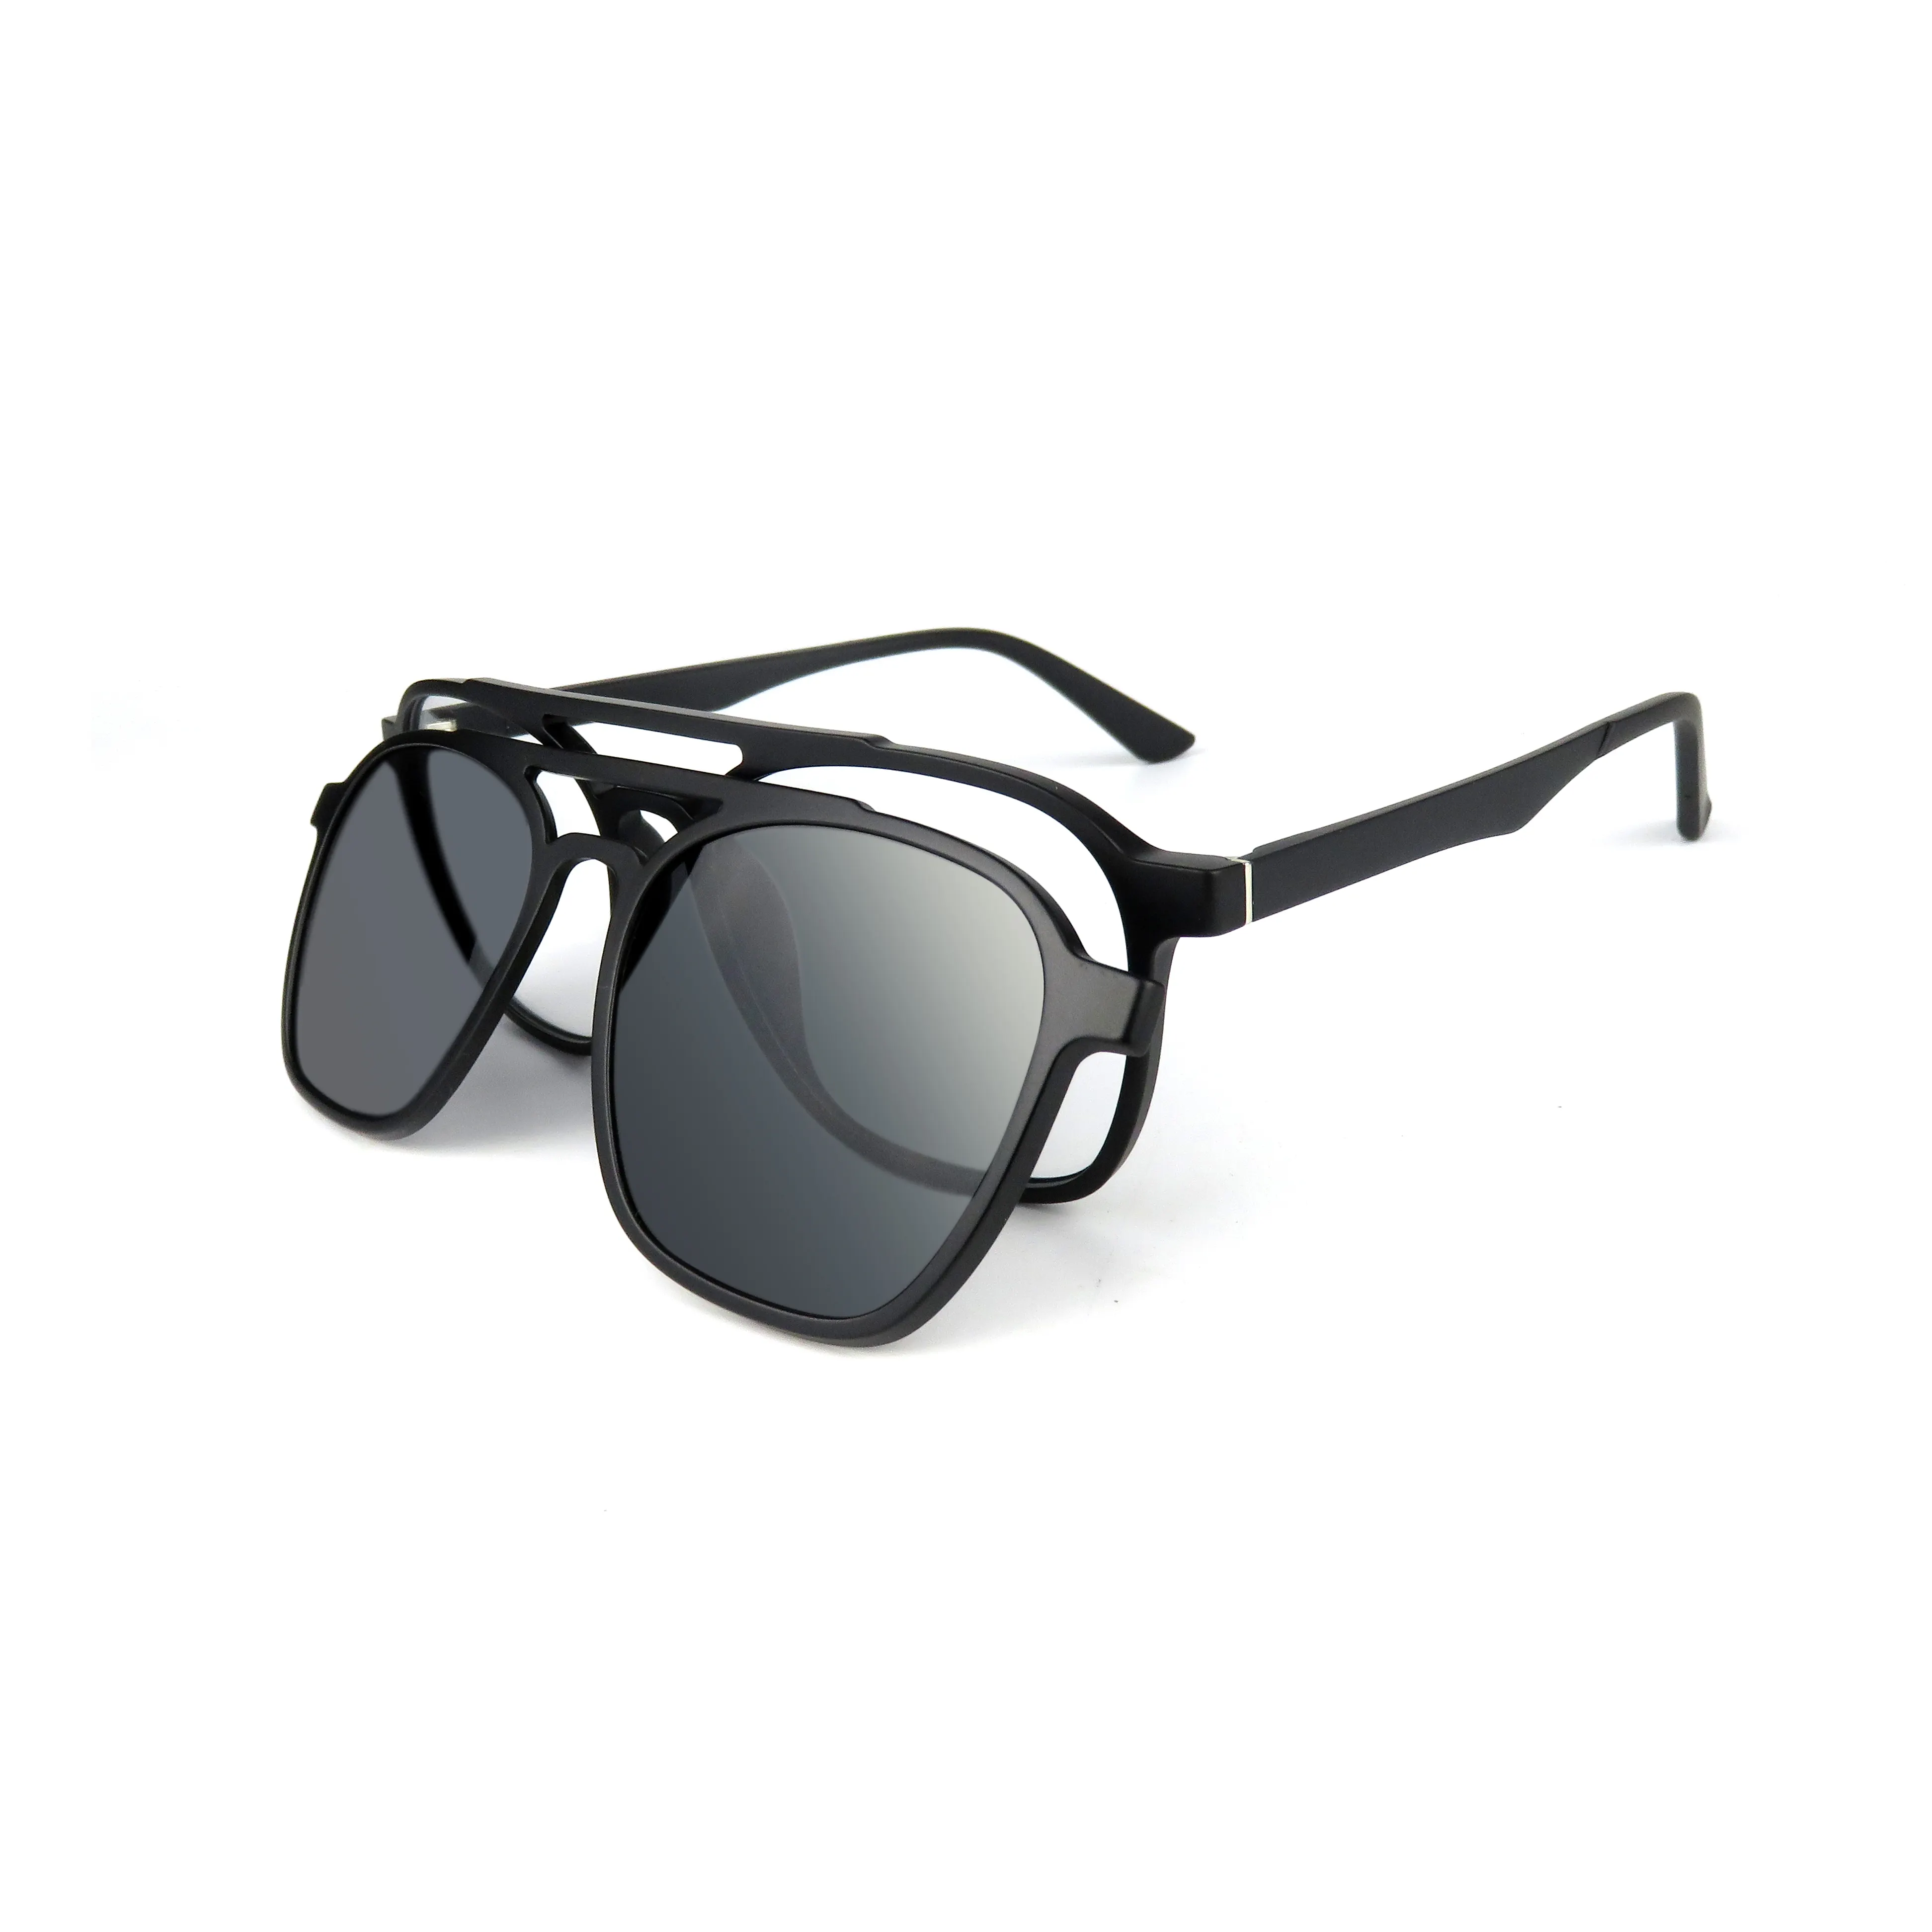 2021 חדש OEM באיכות גבוהה Ultem מסגרת Eyewear מקוטב מגנטי קליפ על משקפיים TR90 מותאם אישית לוגו מגנטי אופטי מסגרת משקפיים